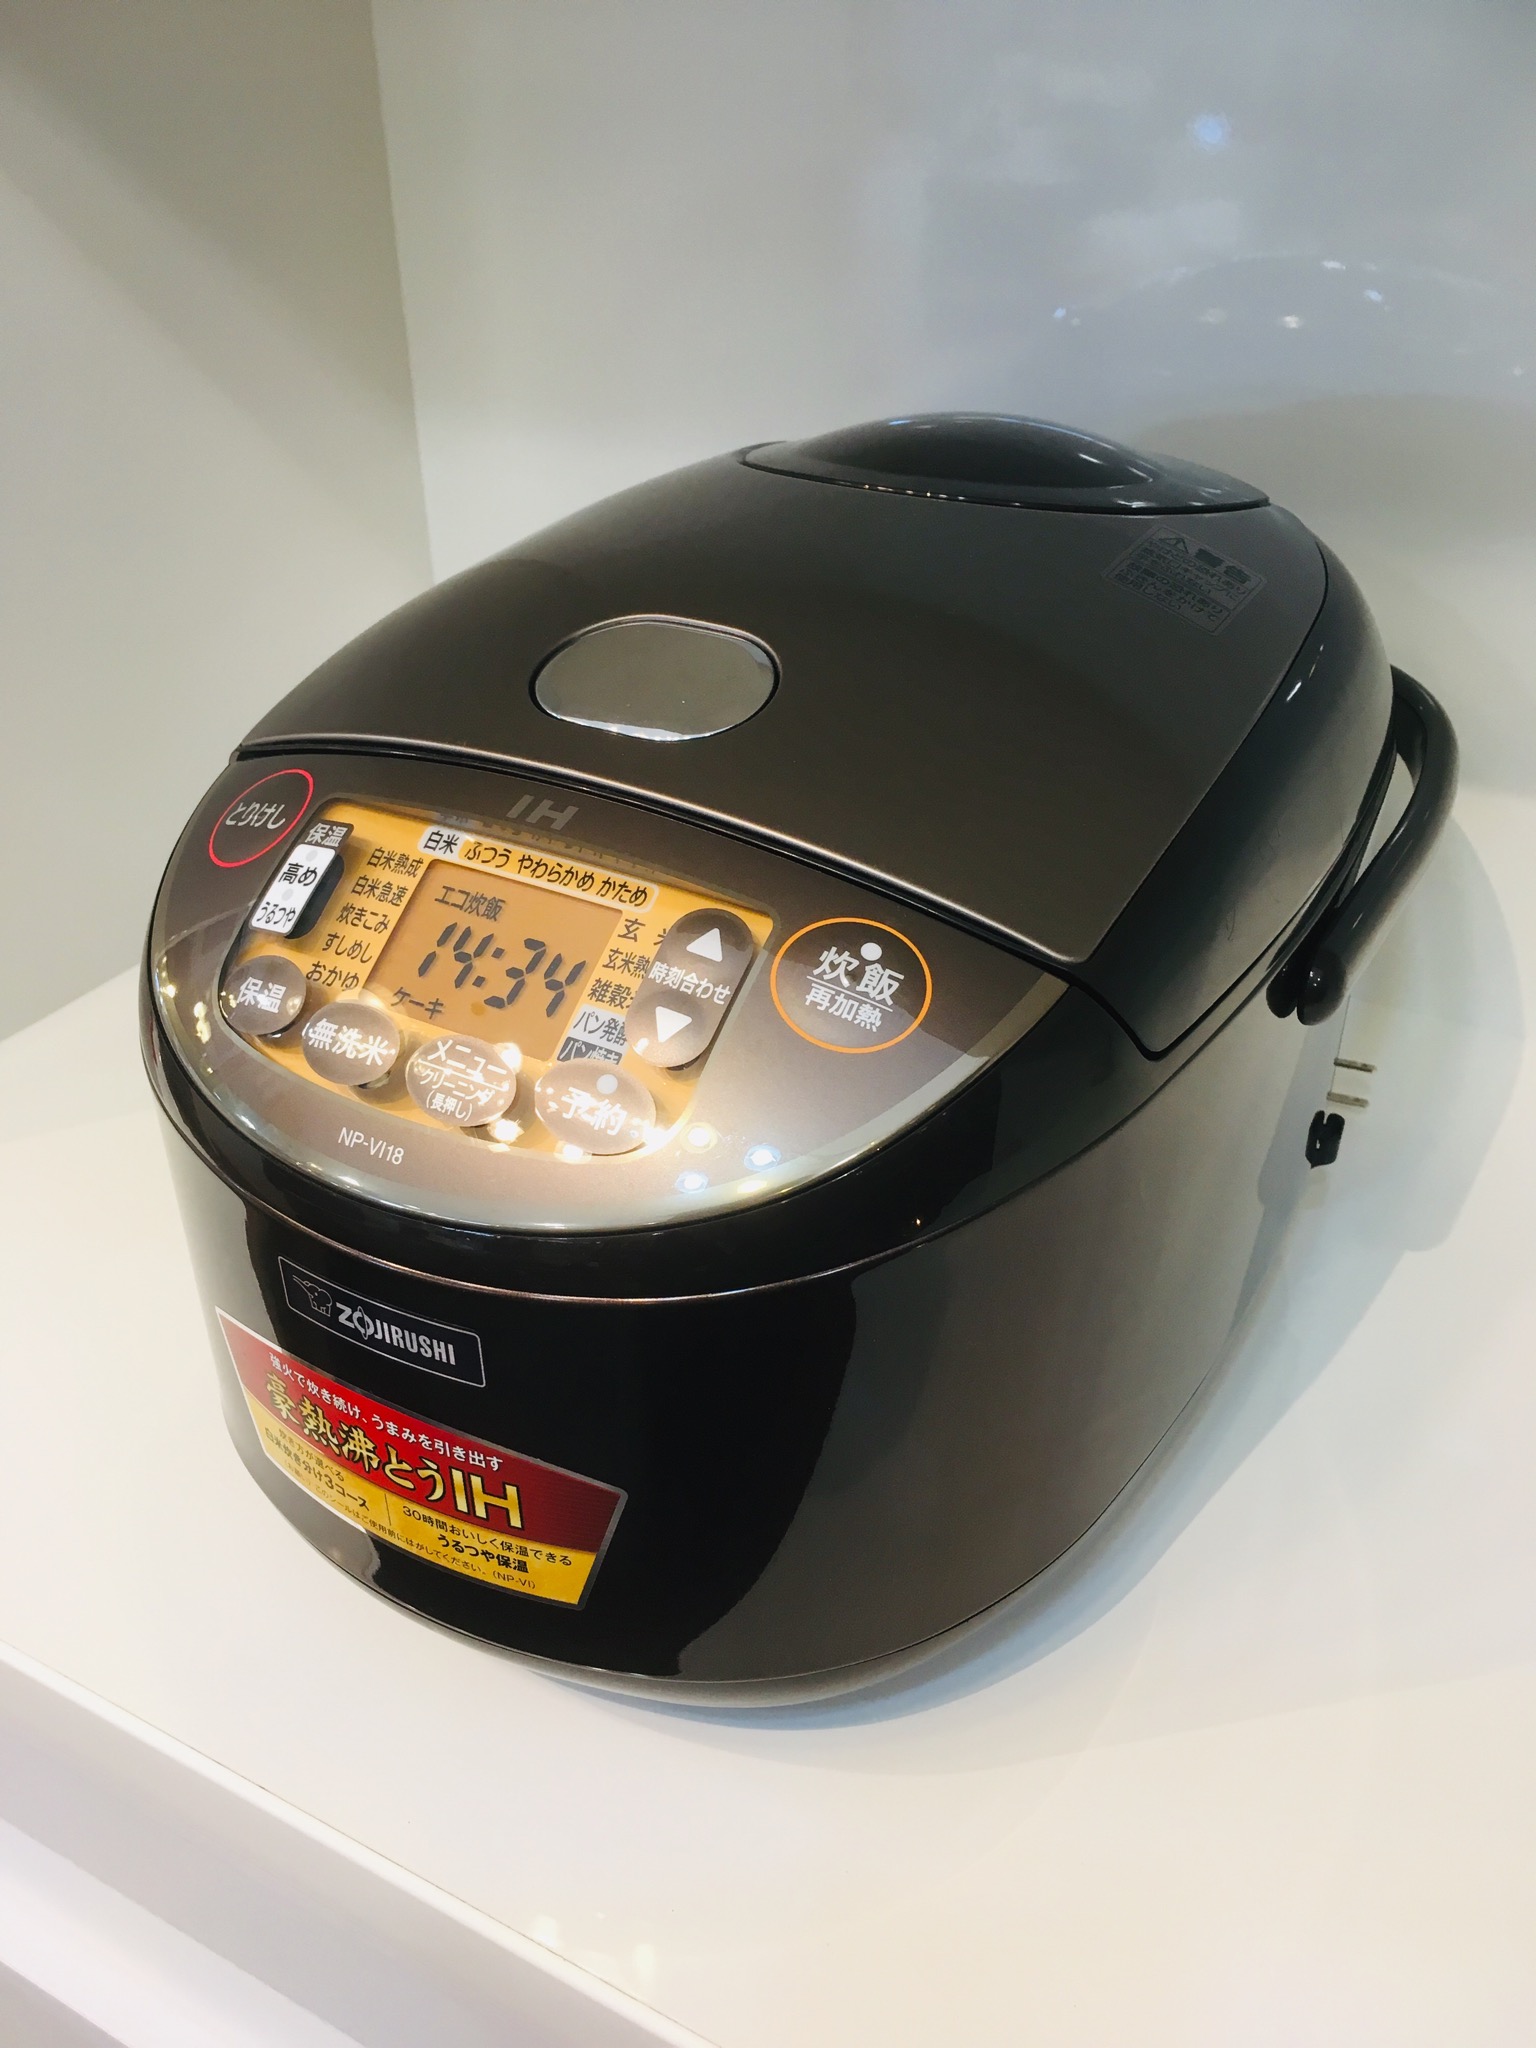 Zojirushi 一升炊き炊飯器 Nd Vi18 年製 買取しました 愛知と岐阜のリサイクルショップ 再良市場